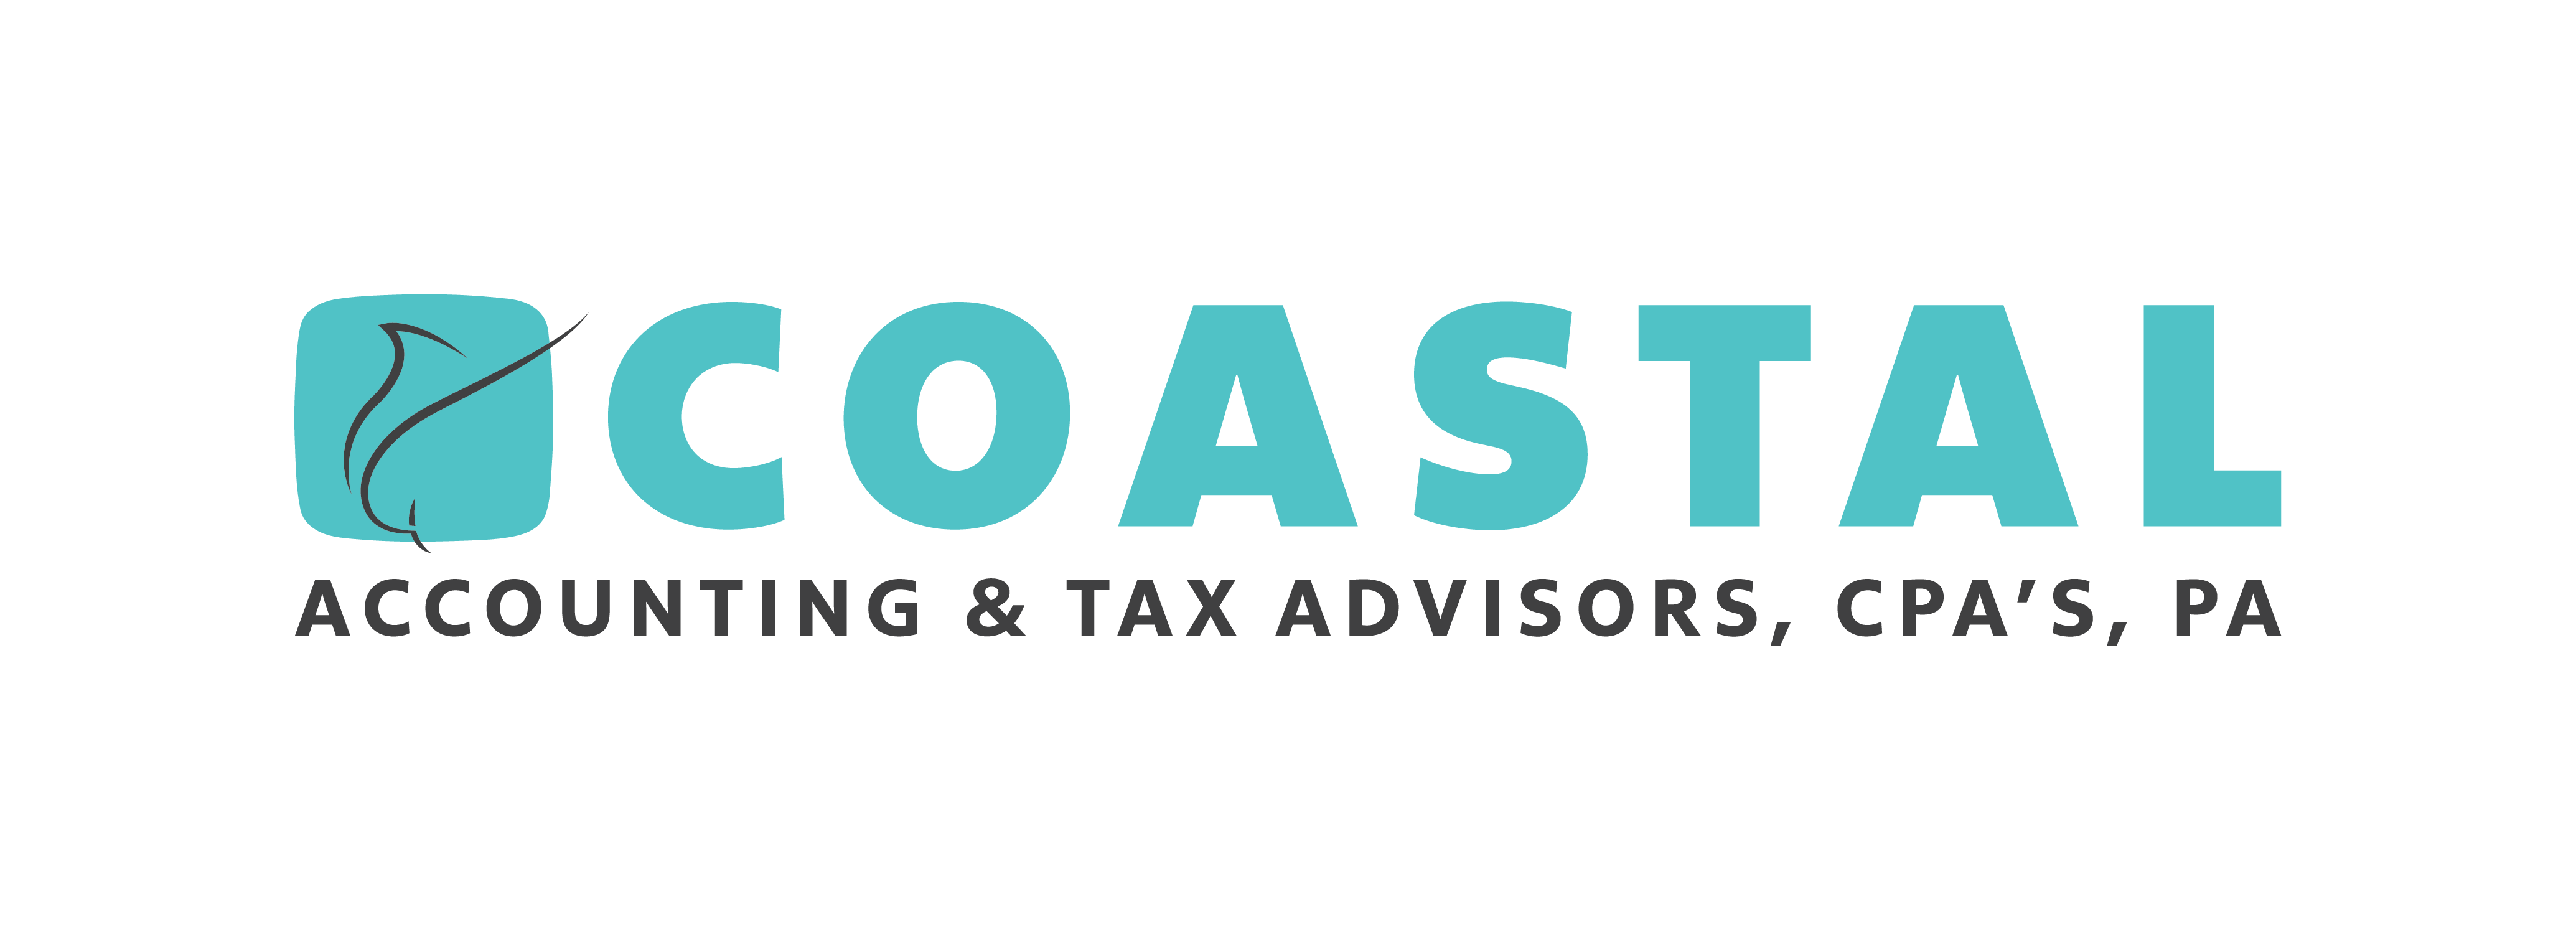 Coastal Accounting & Tax Advisors